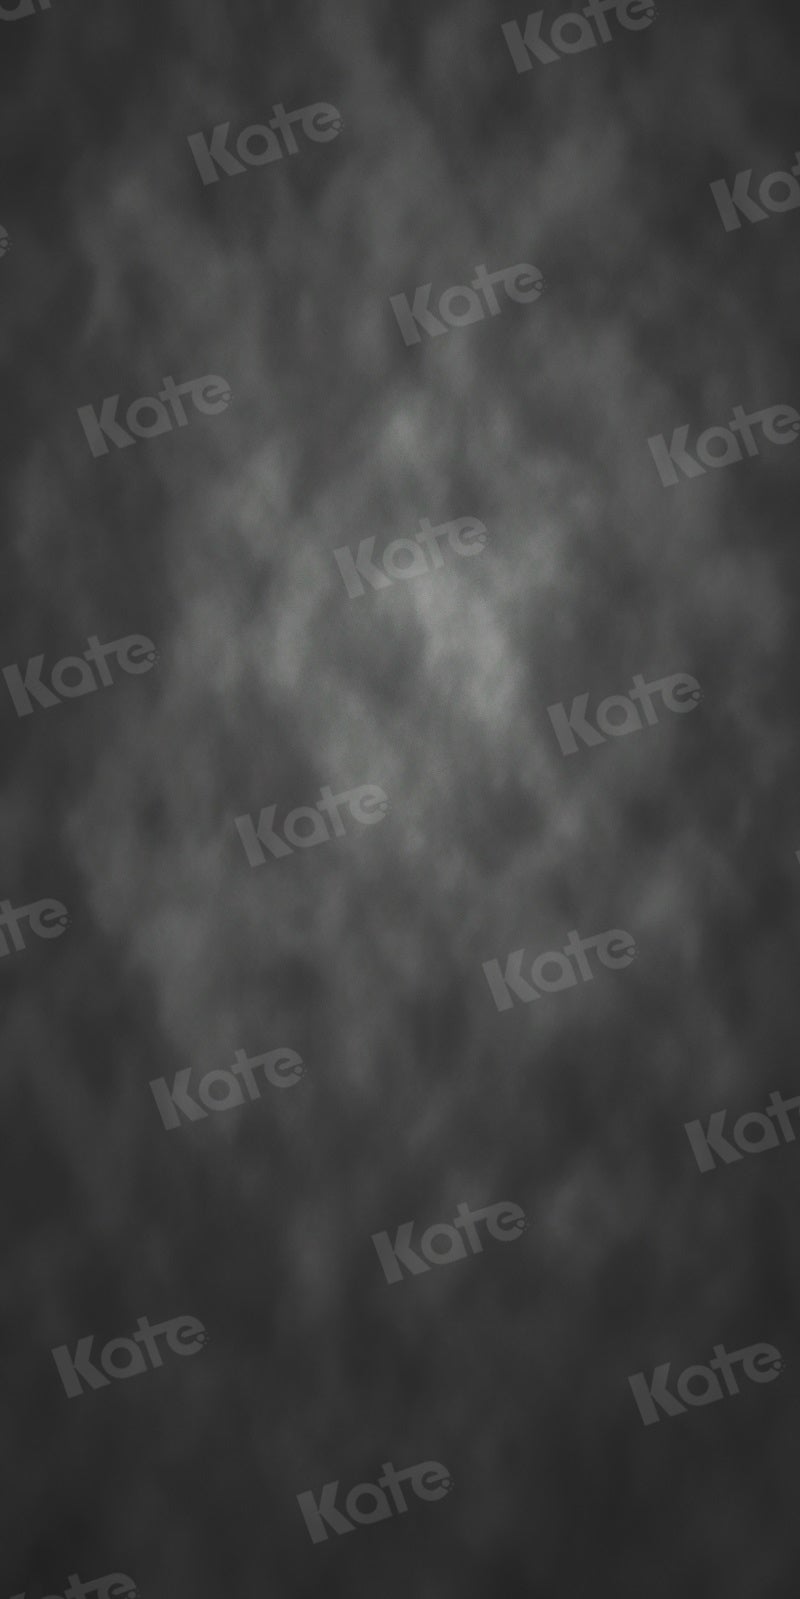 Kate Balayage Texture Abstraite Noir Toile de fond pour la photographie